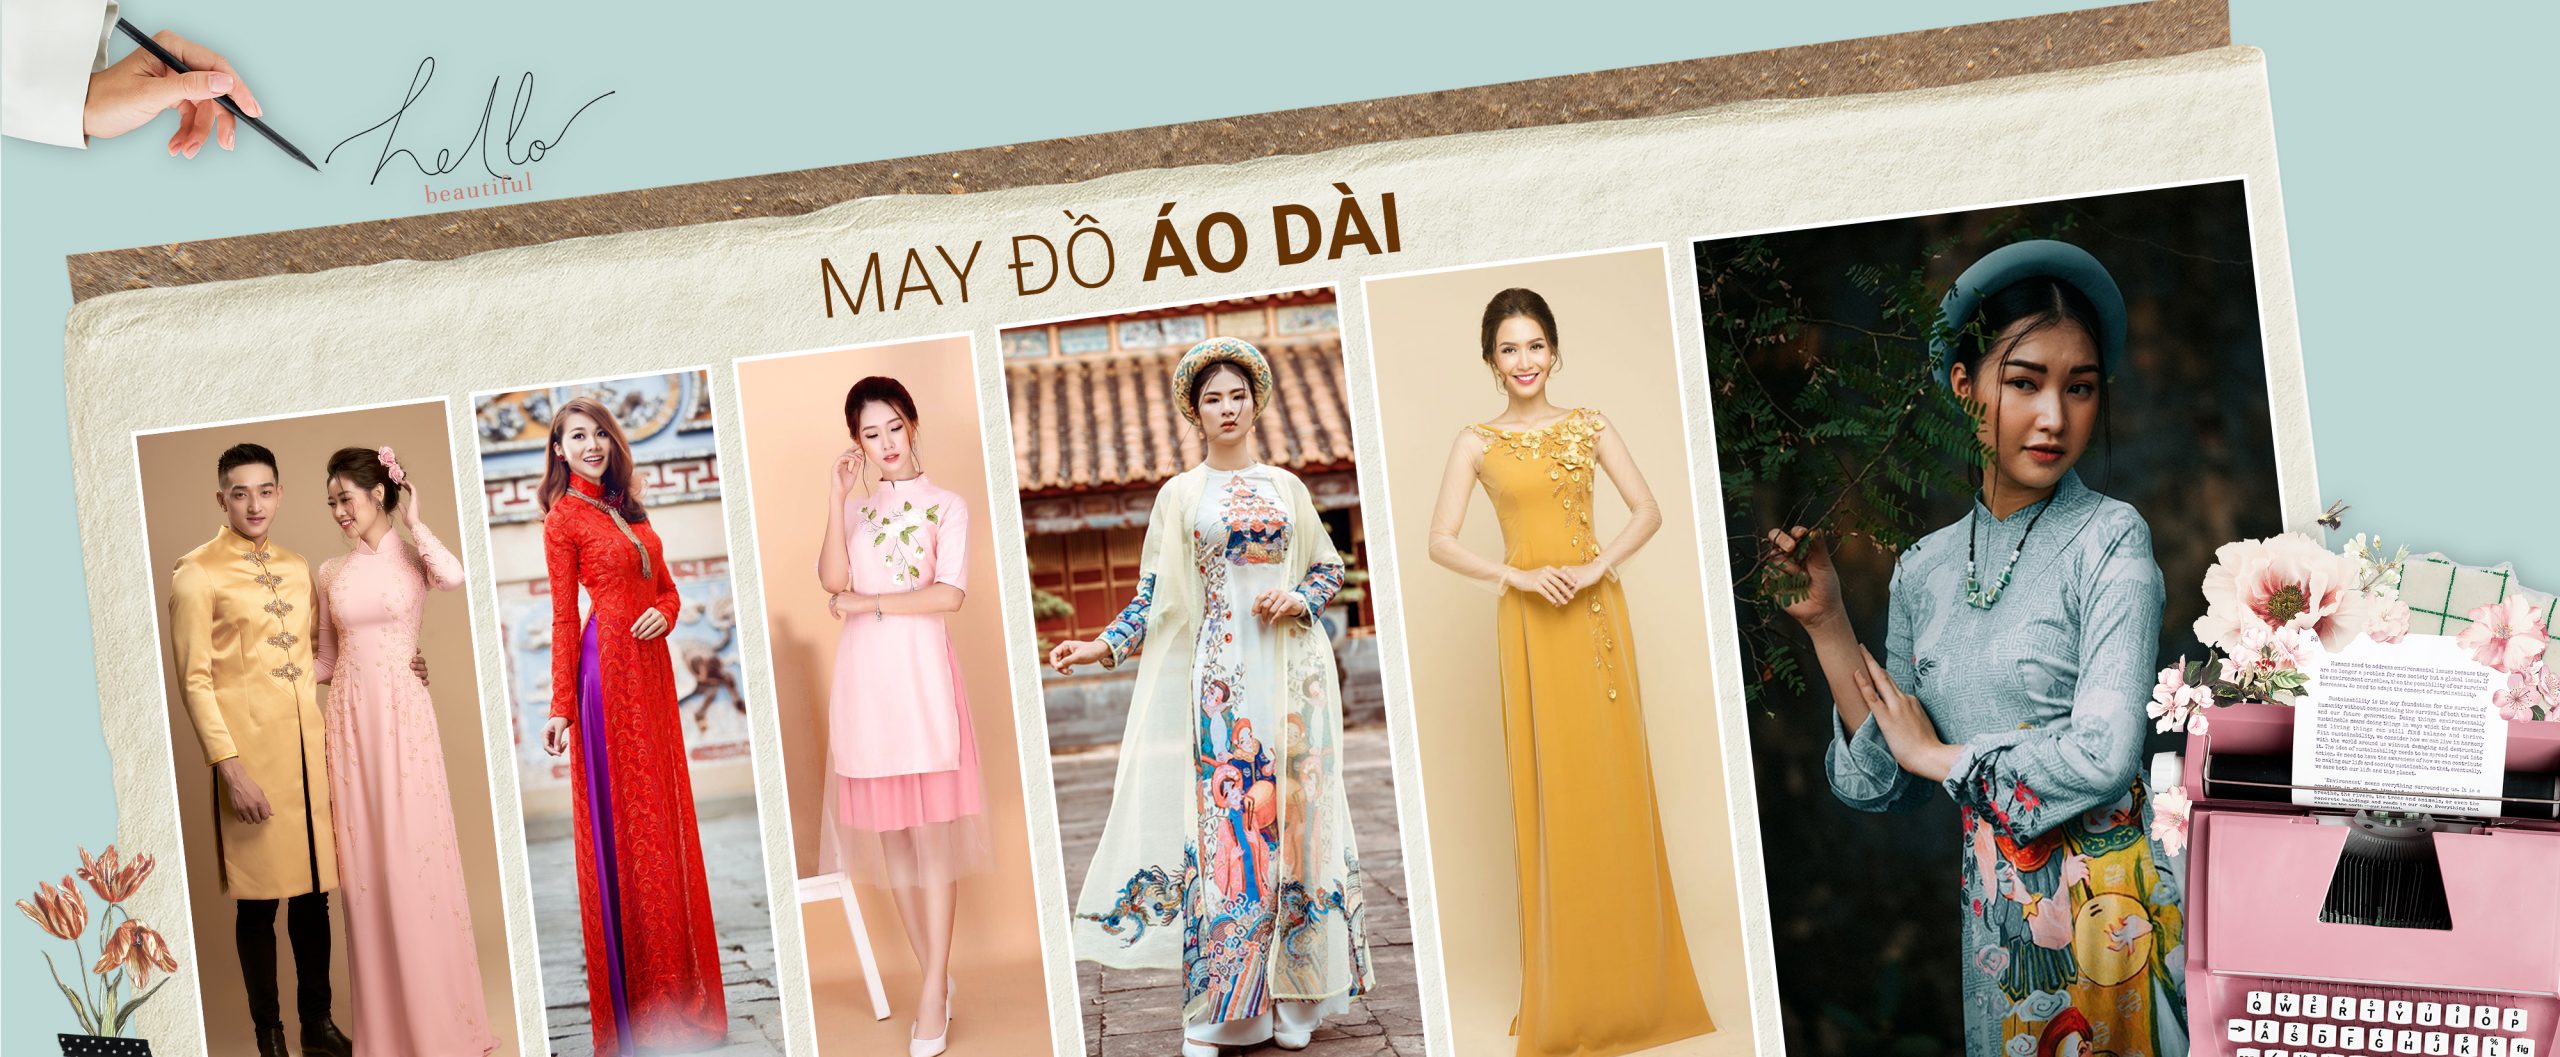 Top 10 cửa hàng cung cấp dịch vụ may áo dài đẹp nhất Tp Hồ Chí Minh